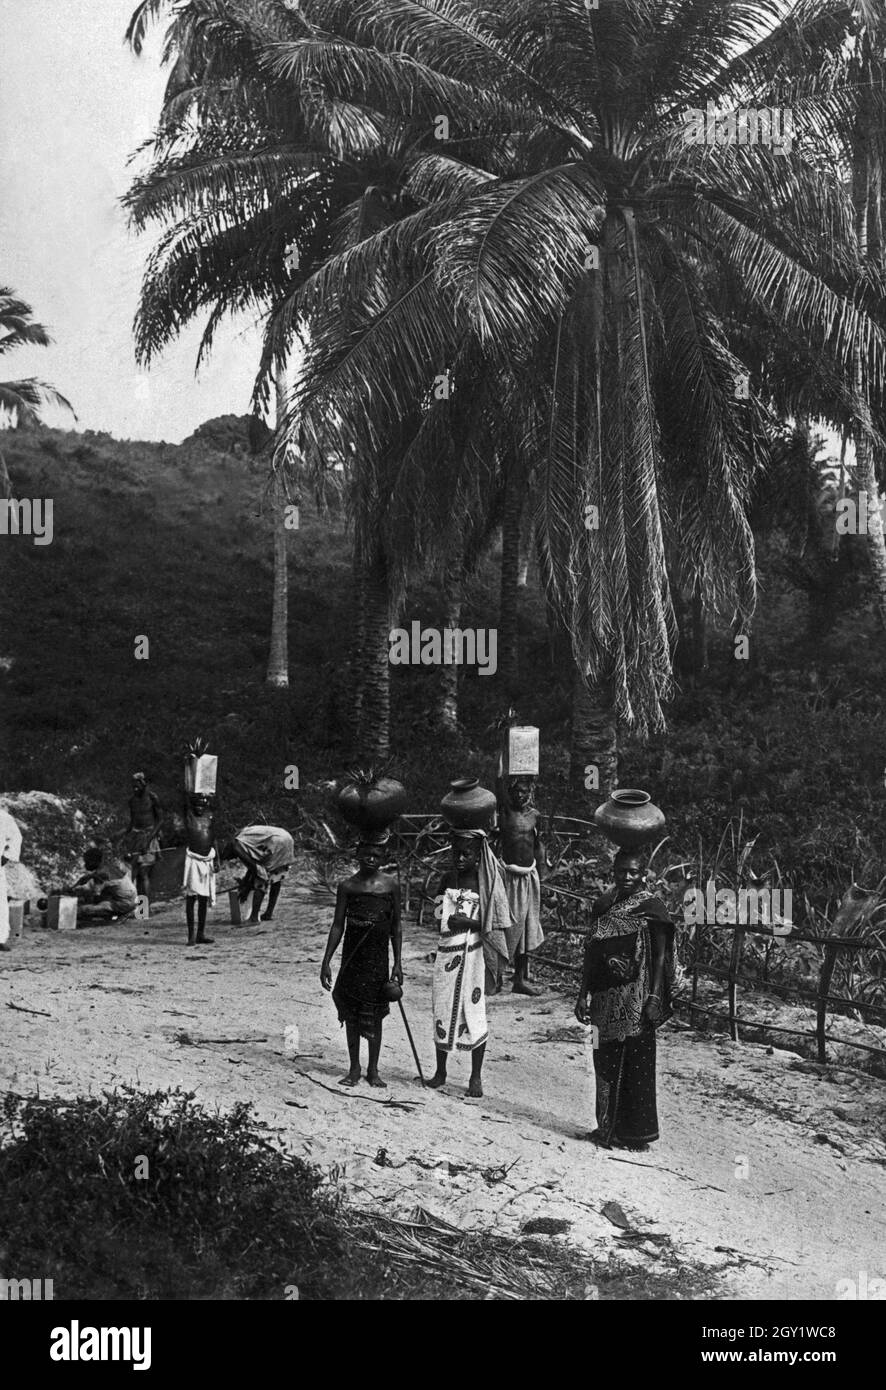 Ölpalme mit Wasserquelle nahe Dar es Salam, Deutsch-Ostafrika 1900er Jahre. Source d'eau avec palmier à huile africain près de Dar es Salam, Afrique de l'est allemande des années 1900. Banque D'Images